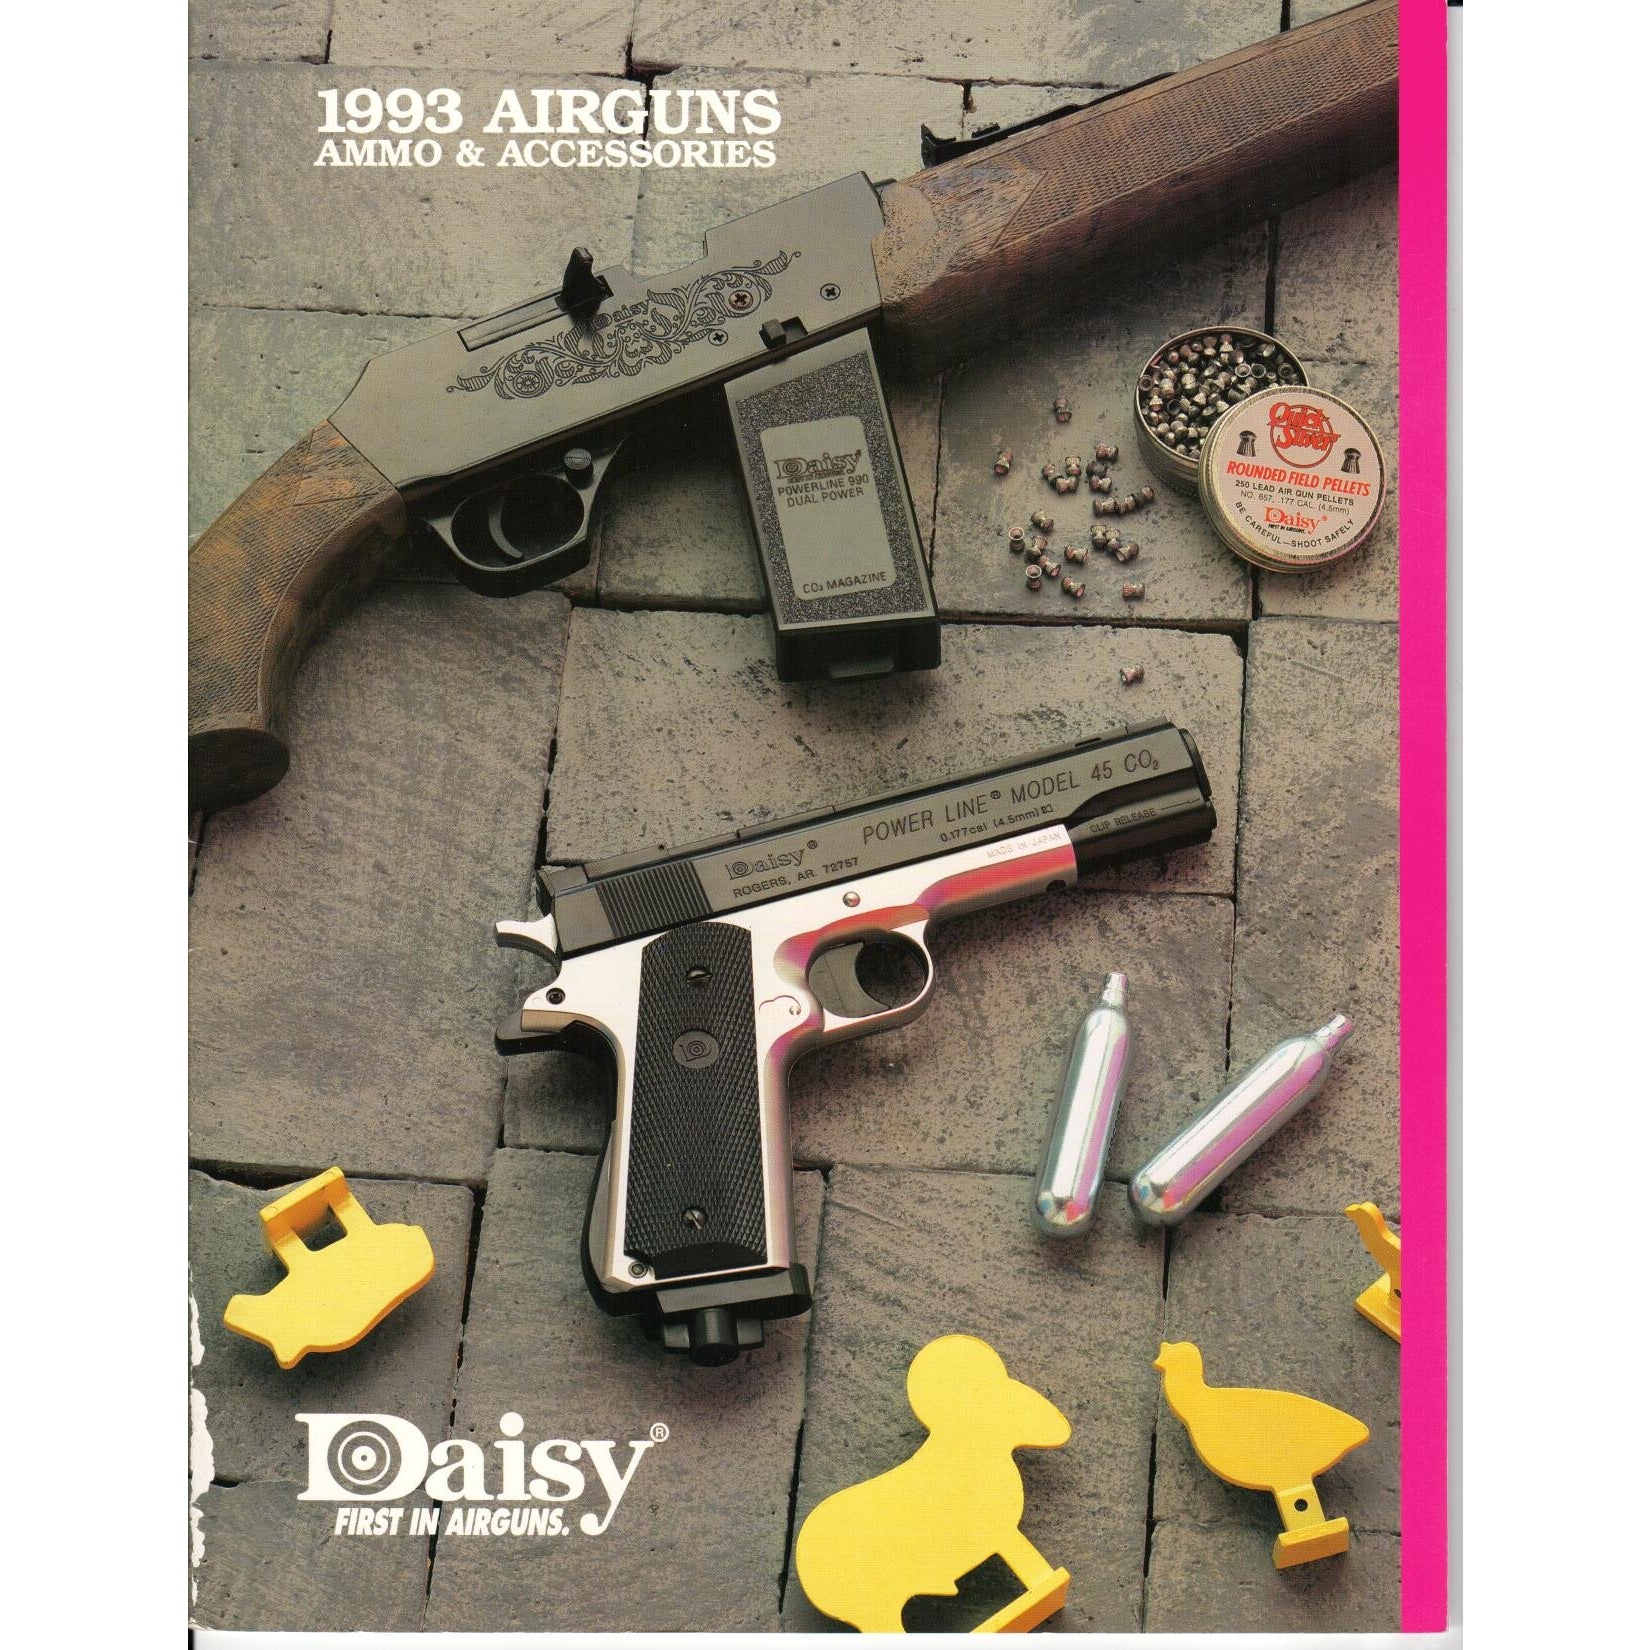 Daisy 1993 Airguns, Ammo & Accessories